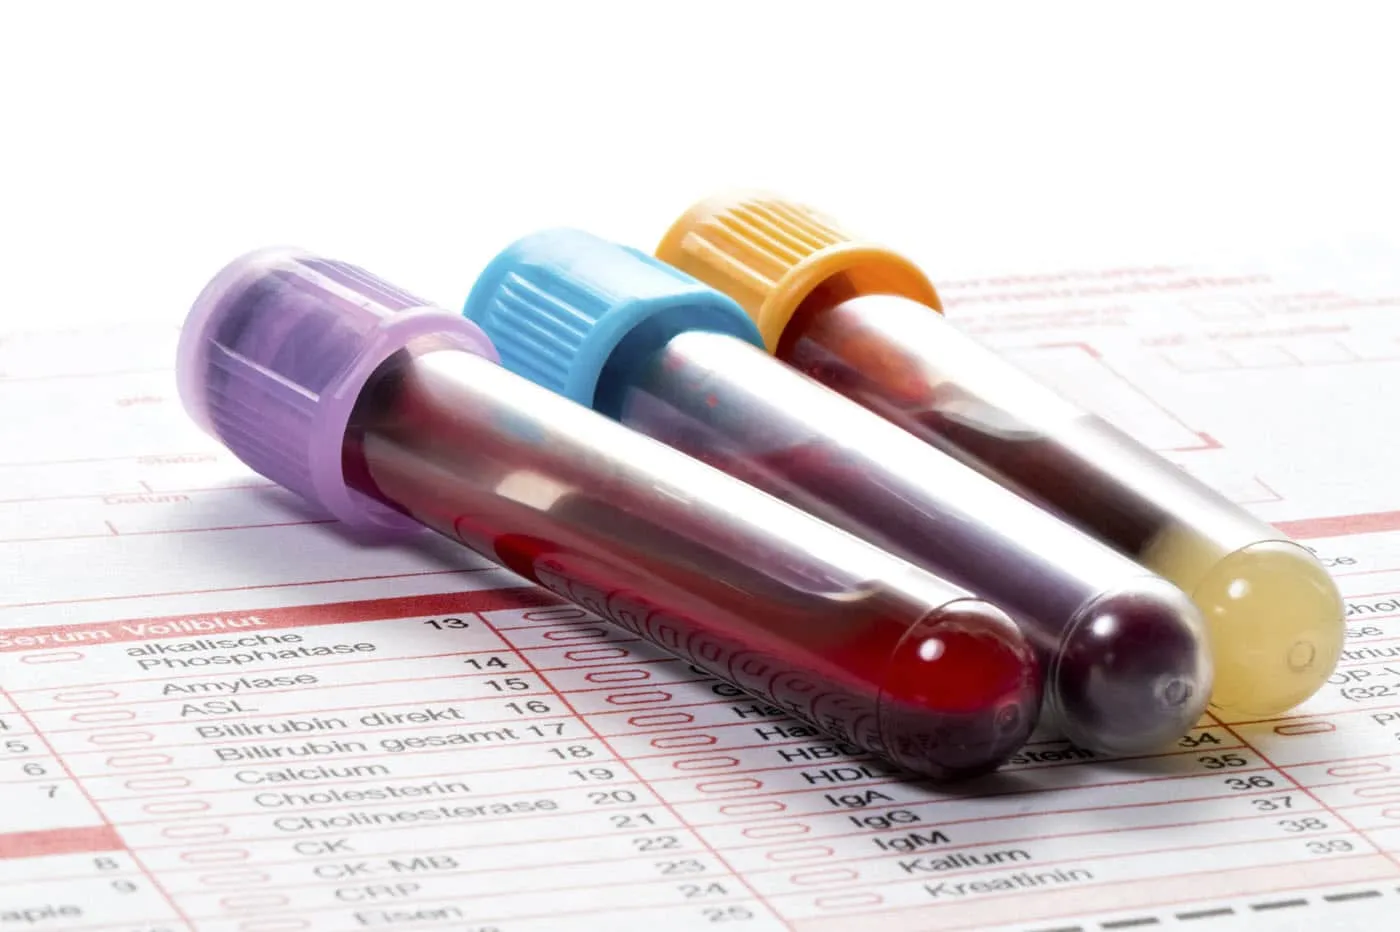 xét nghiệm máu là một trong những xét nghiệm ung thư đại tràng đúng không?